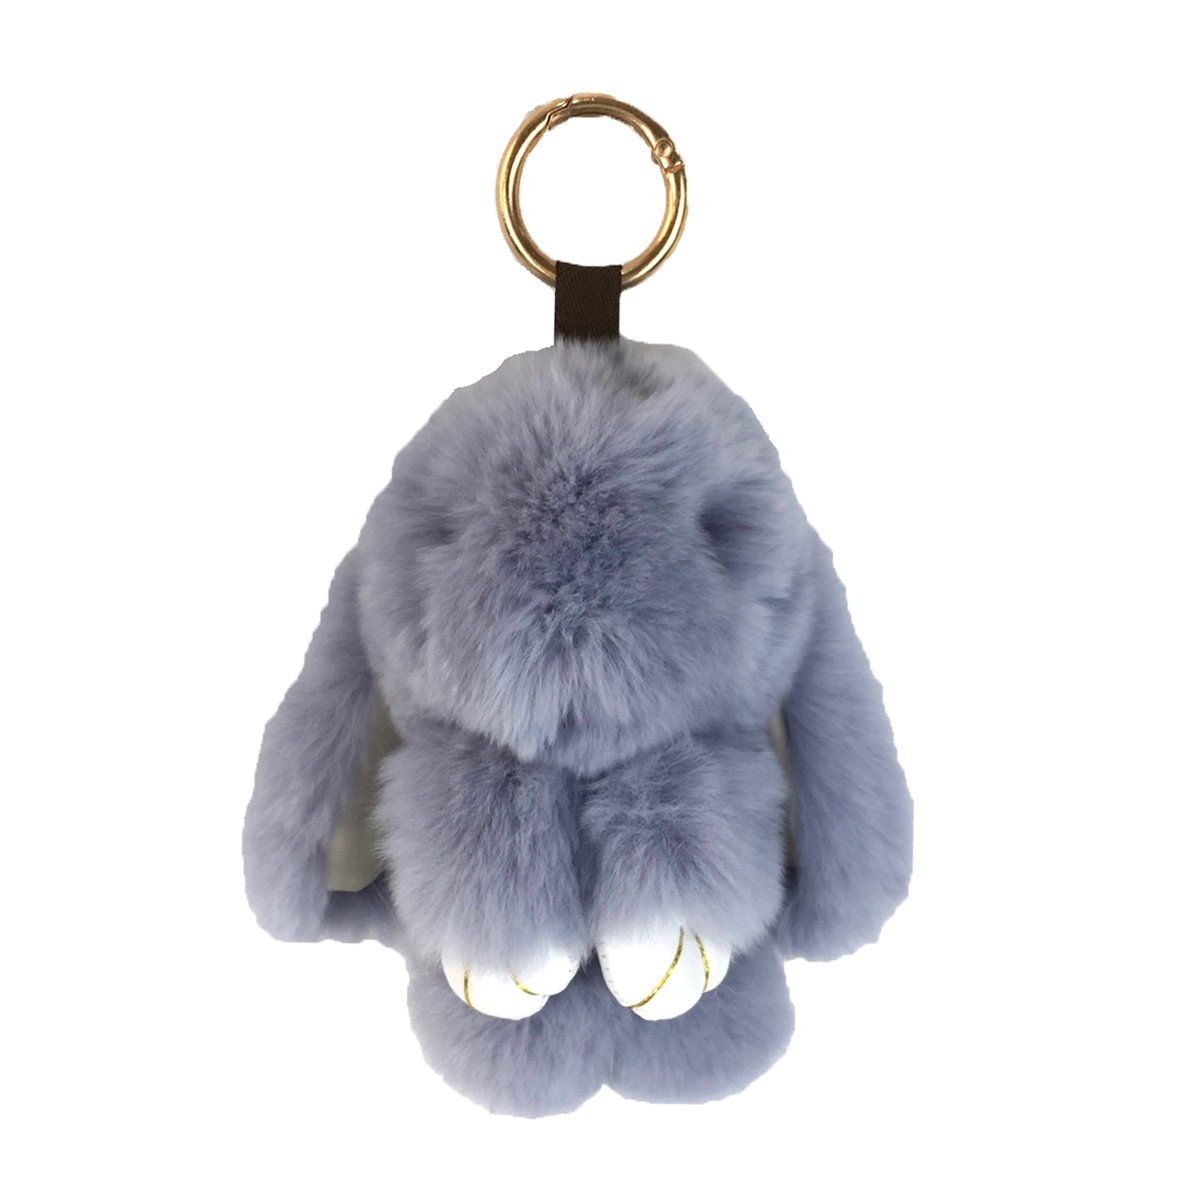 Fashion Culture Floppy Bunny Geniune Rabbit Fur Purse Charm